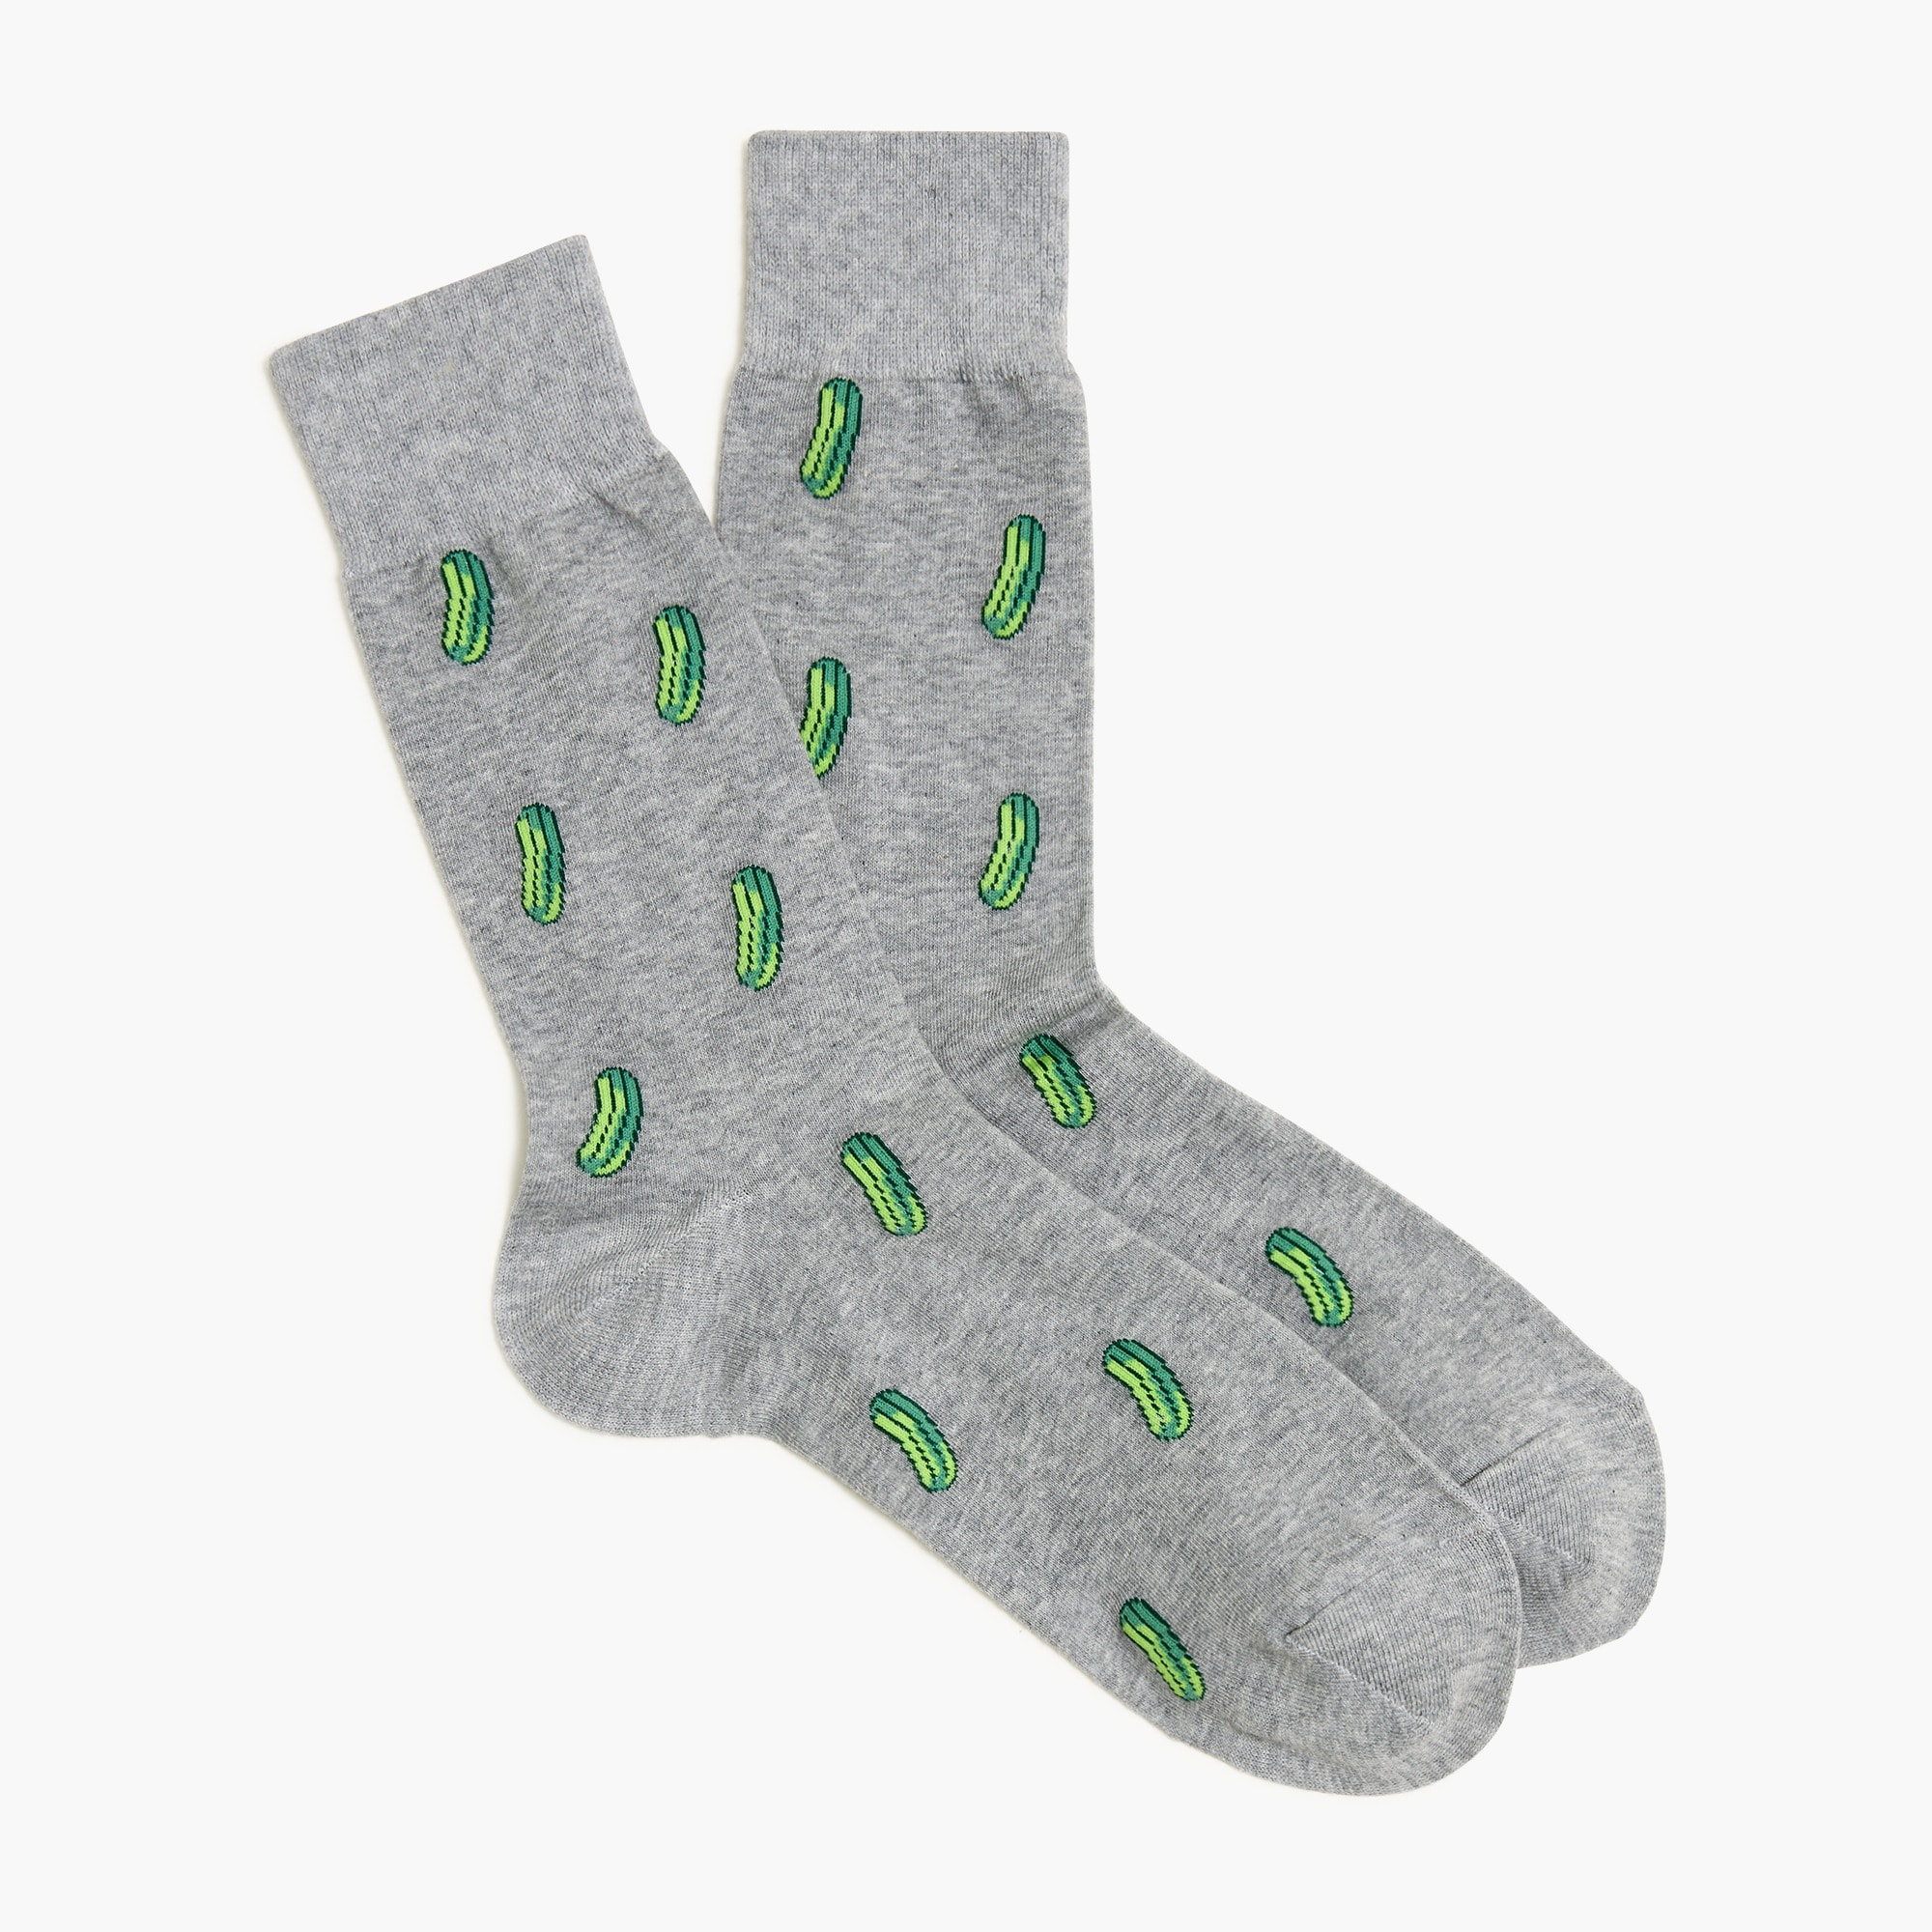 Jcrew Pickle socks